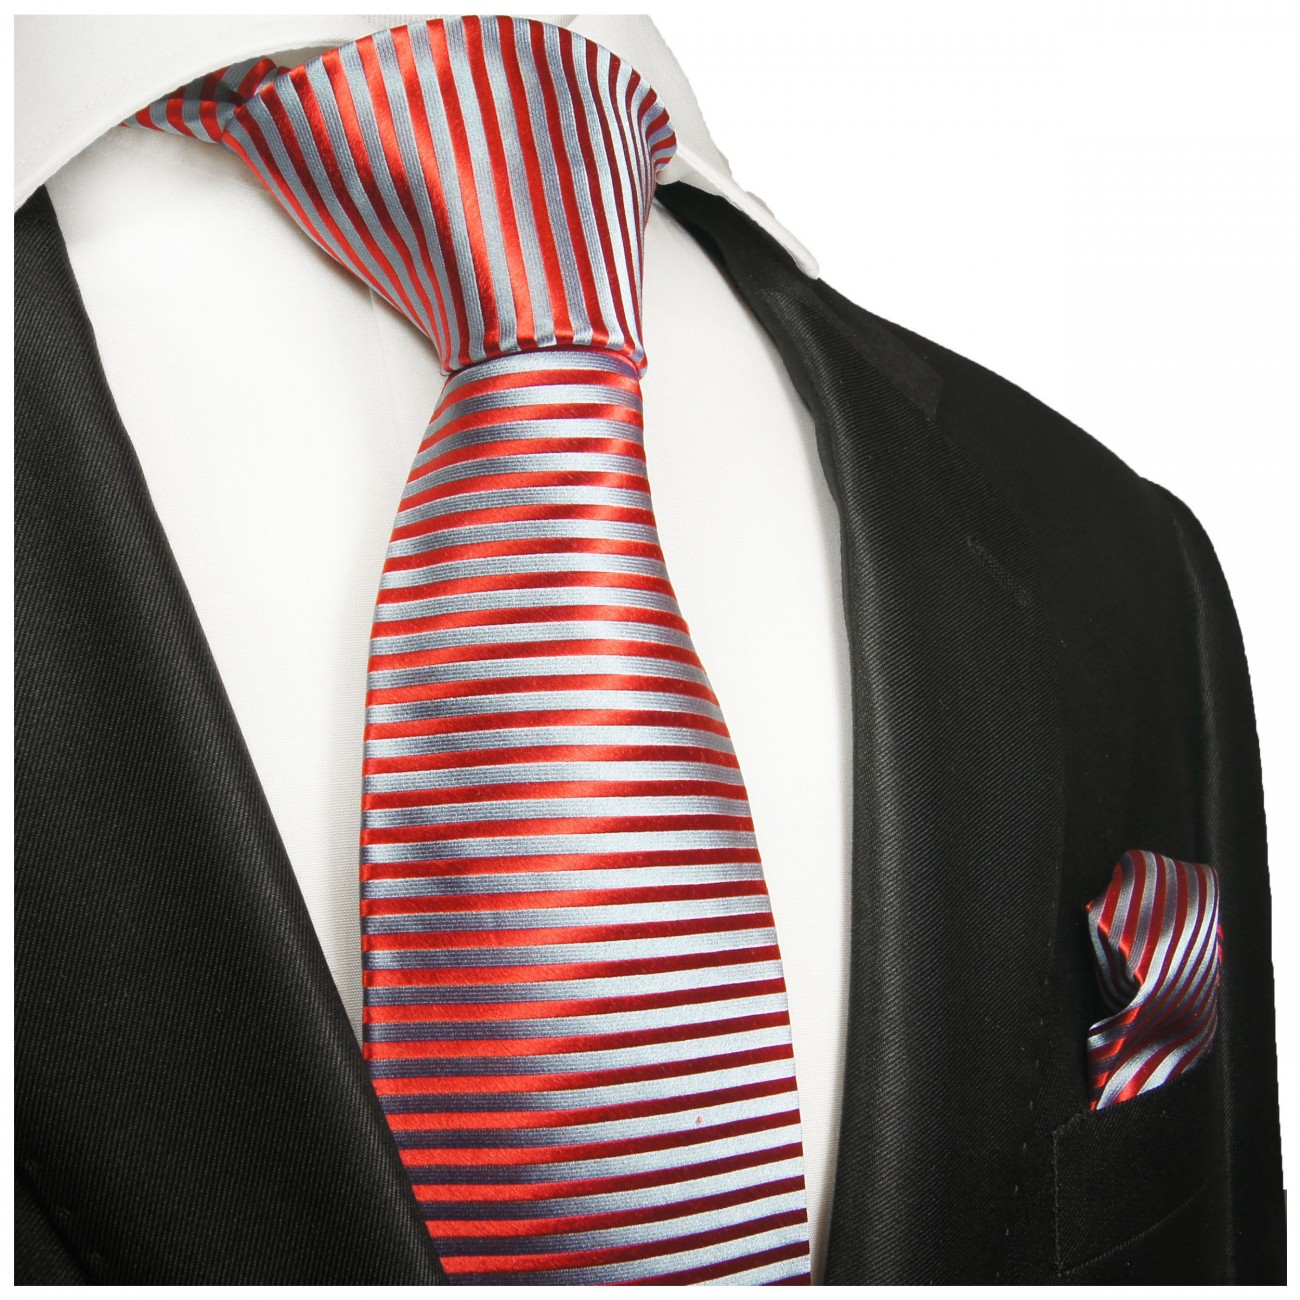 Krawatte rot blau mit Einstecktuch fein gestreift 2004